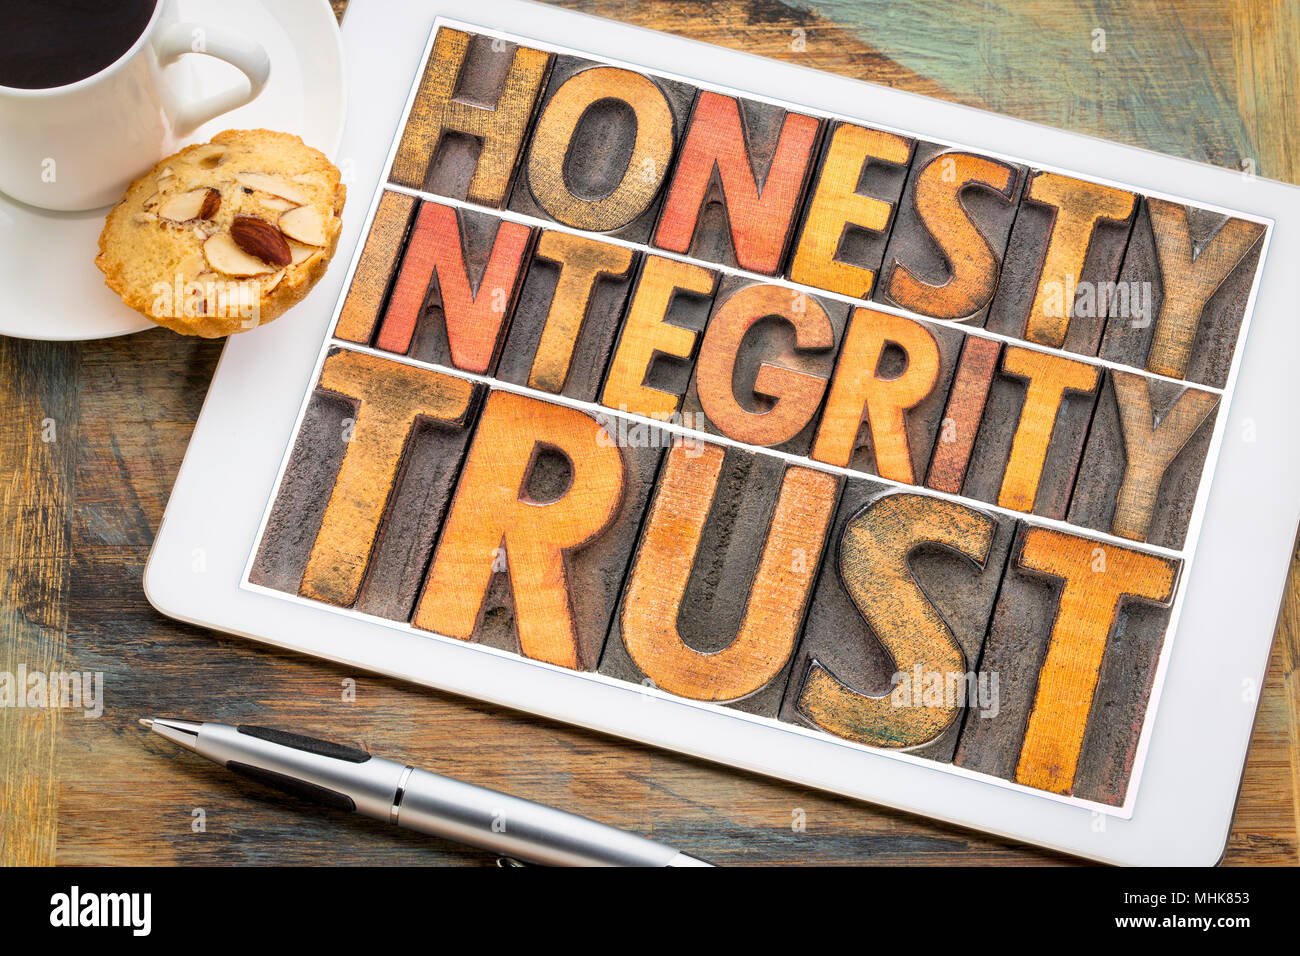 Onestà, Integrità, il concetto di trust - word abstract in rilievografia vintage tipo legno blocchi su una tavoletta digitale con una tazza di caffè Foto Stock